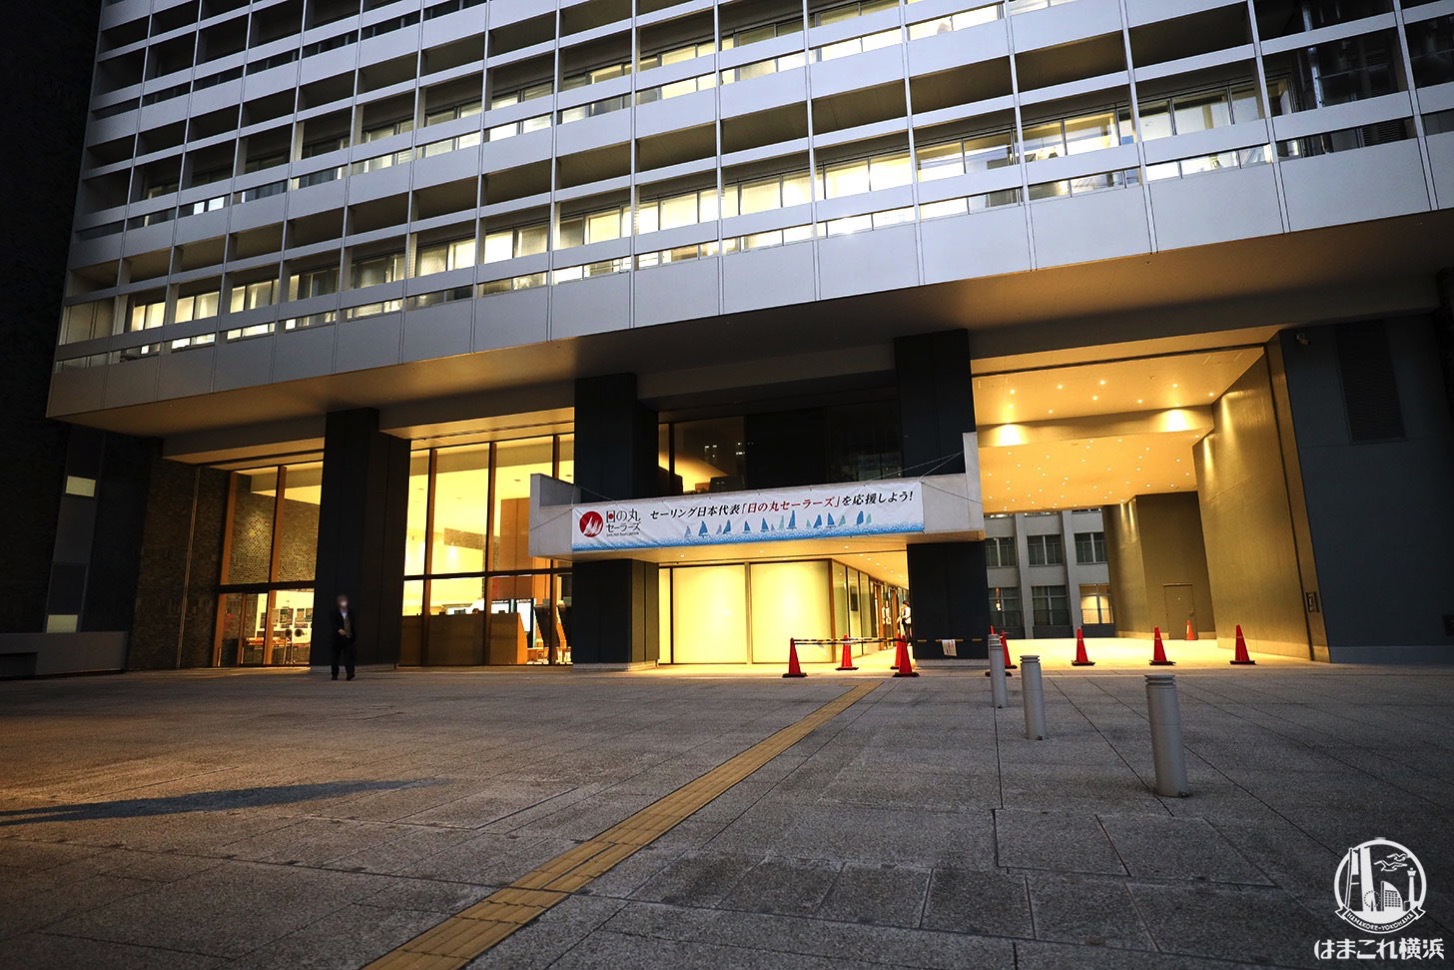 神奈川県庁新庁舎 外観・入口